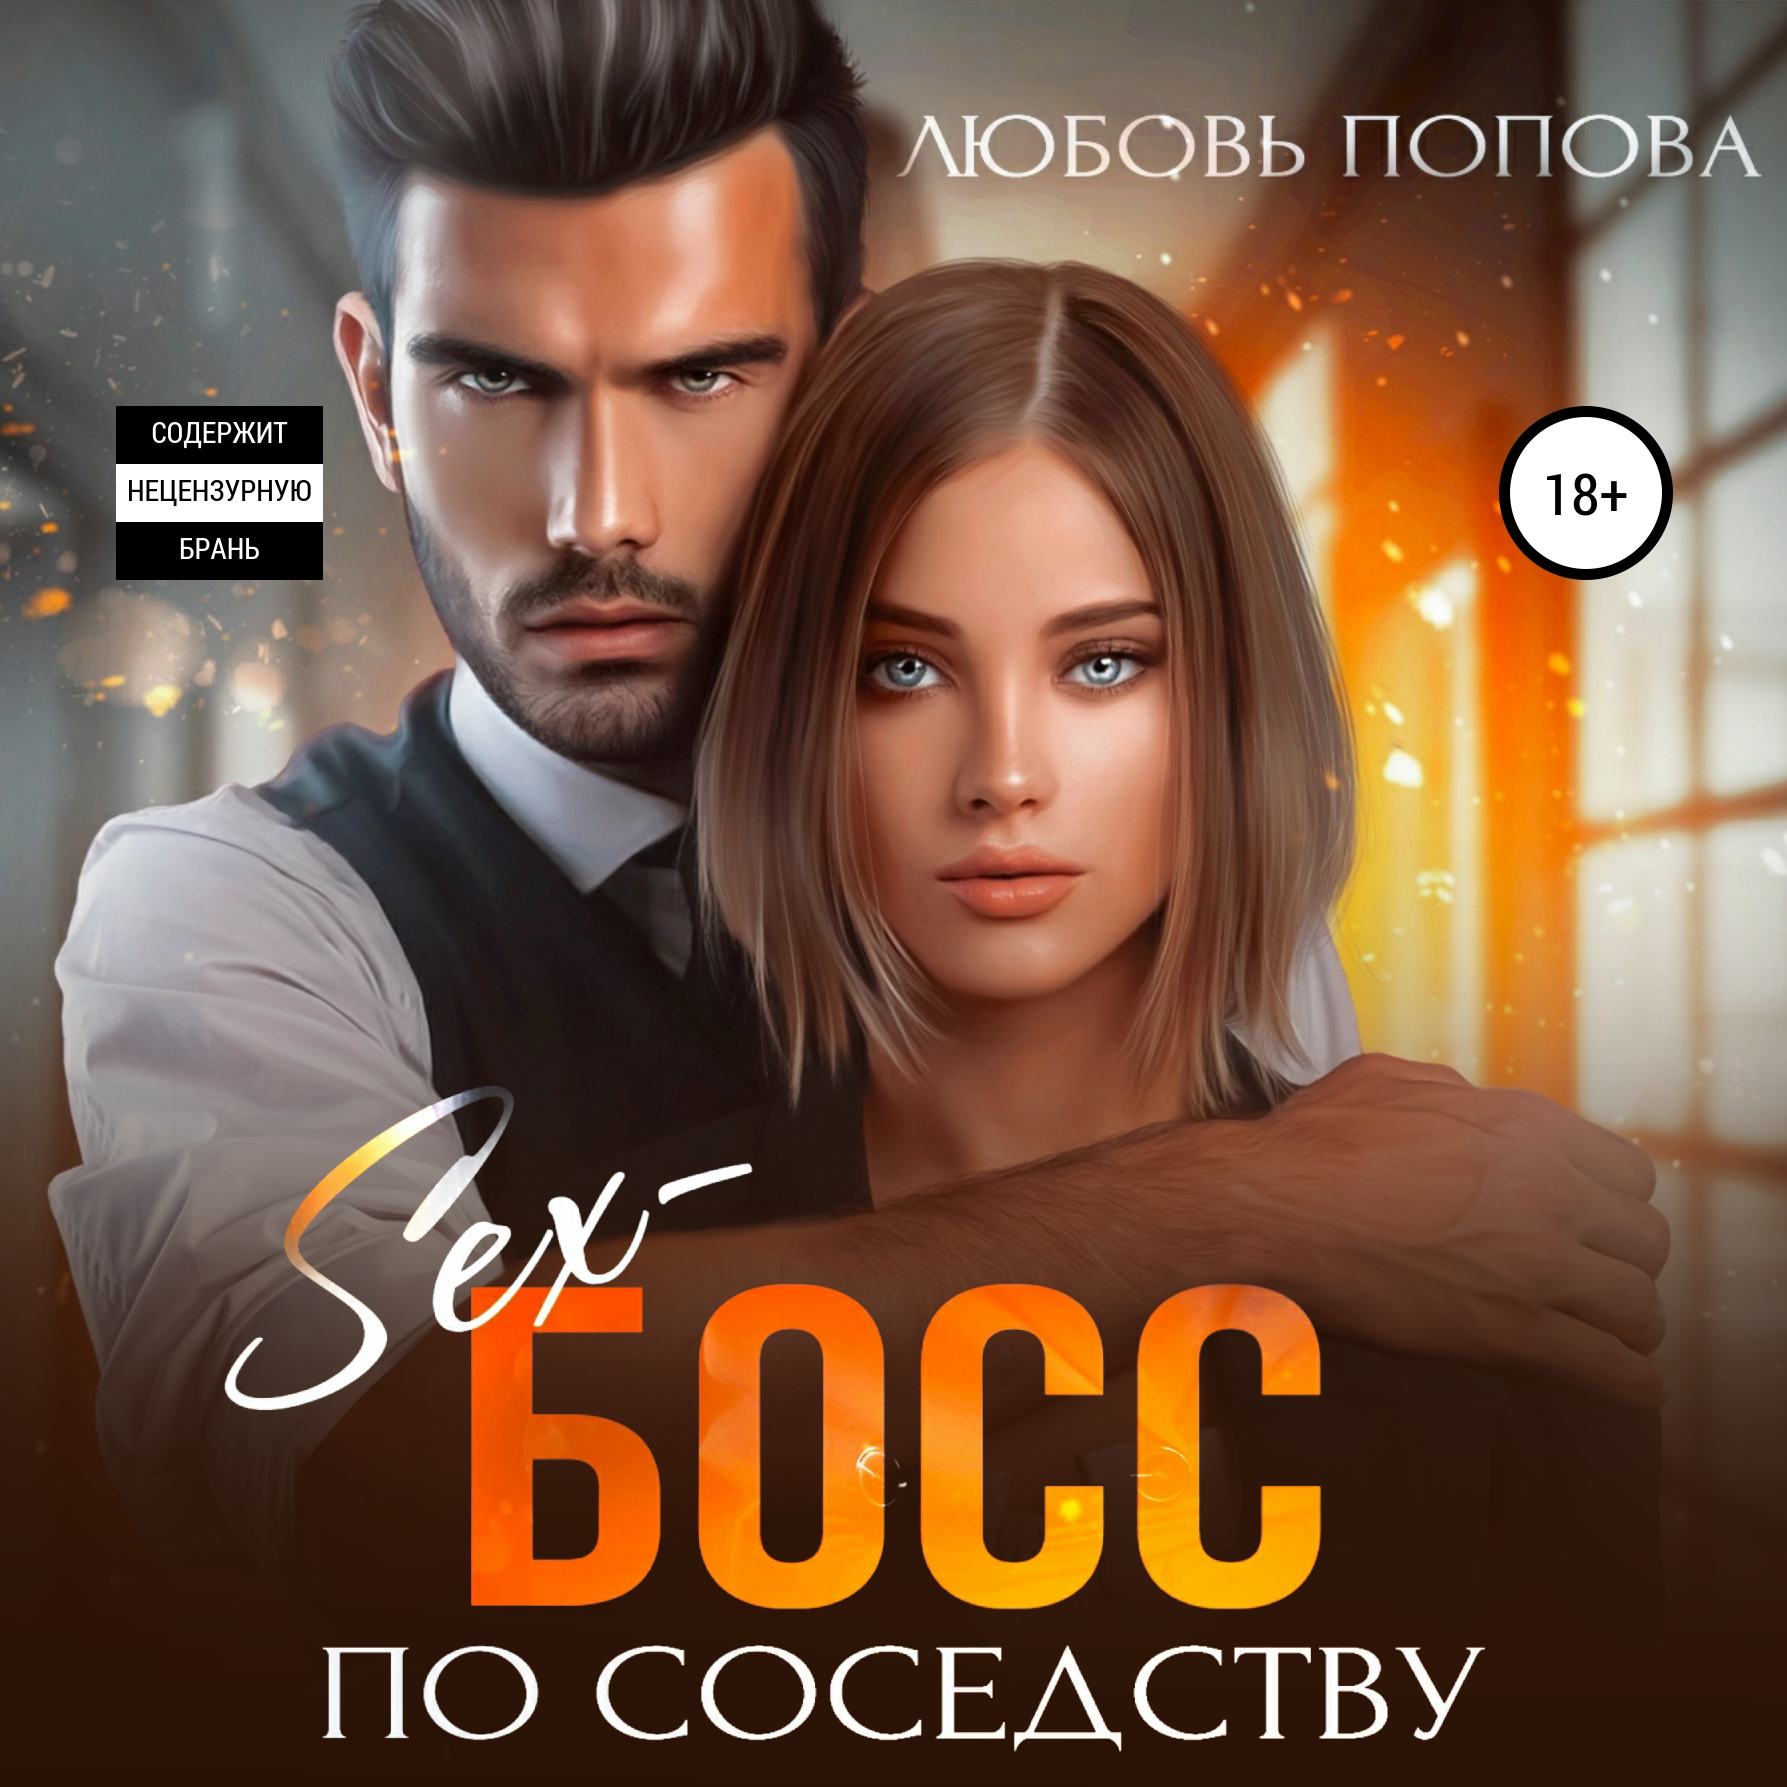 Sexy Boy - Air - слушать песню онлайн бесплатно на arnoldrak-spb.ru